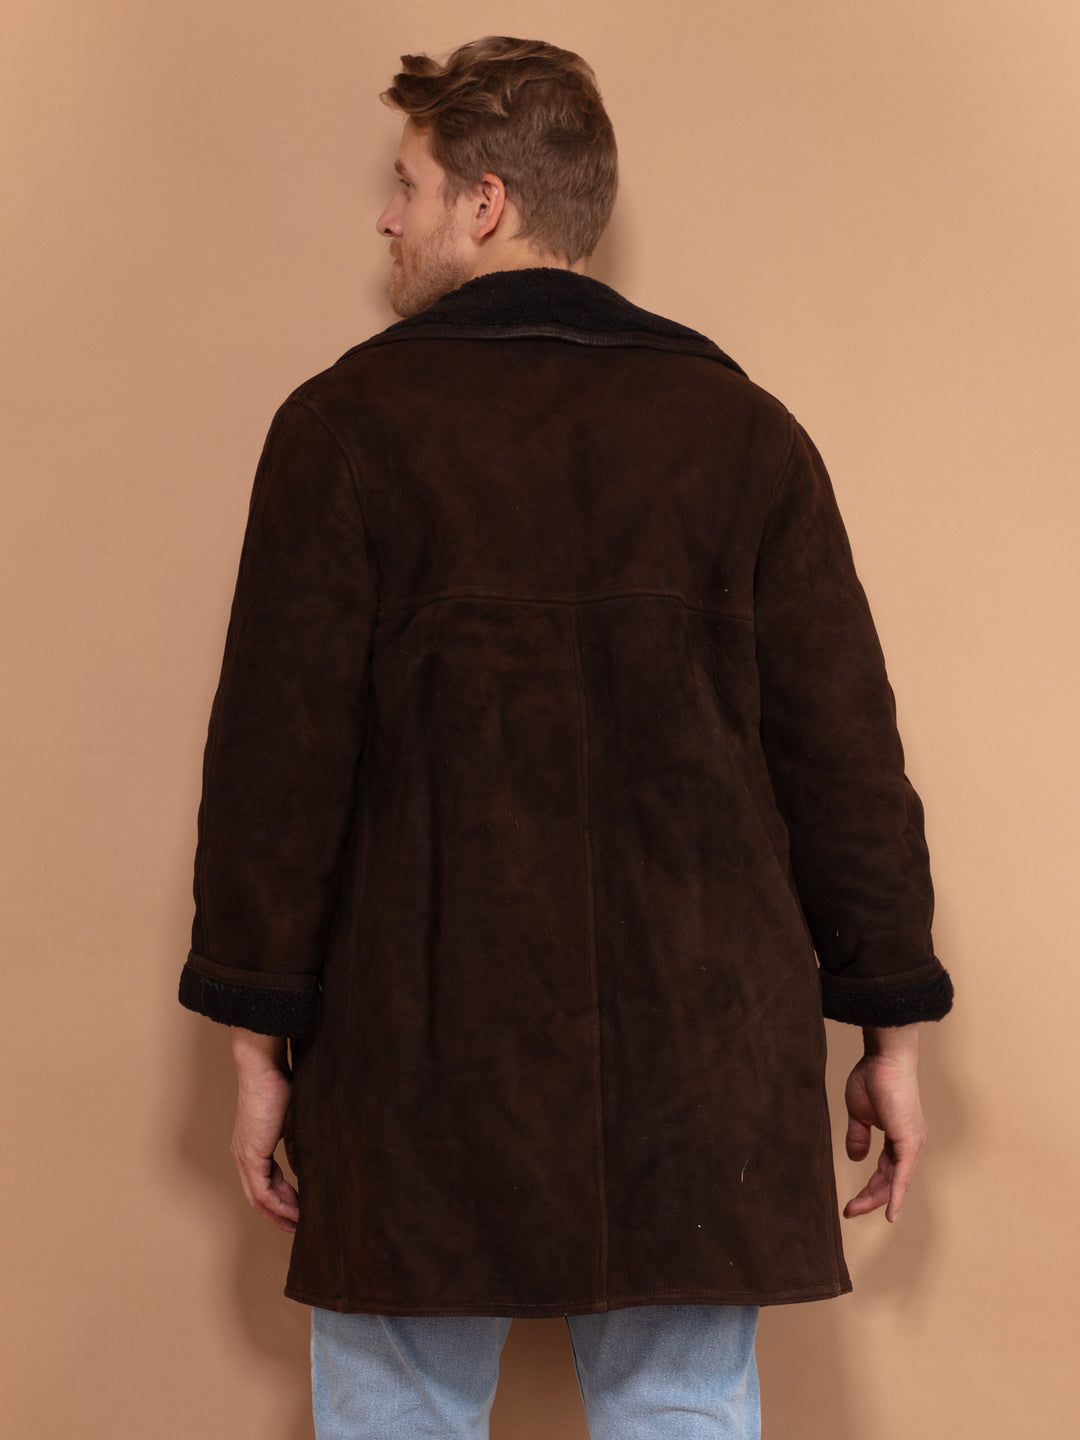 Dark Brown Sheepskin Coat 70s, Size Medium, Vintage Men Collared Coat, Suede Overcoat, Boho Winter Coat, Button Up Retro Sheep Skin Coat